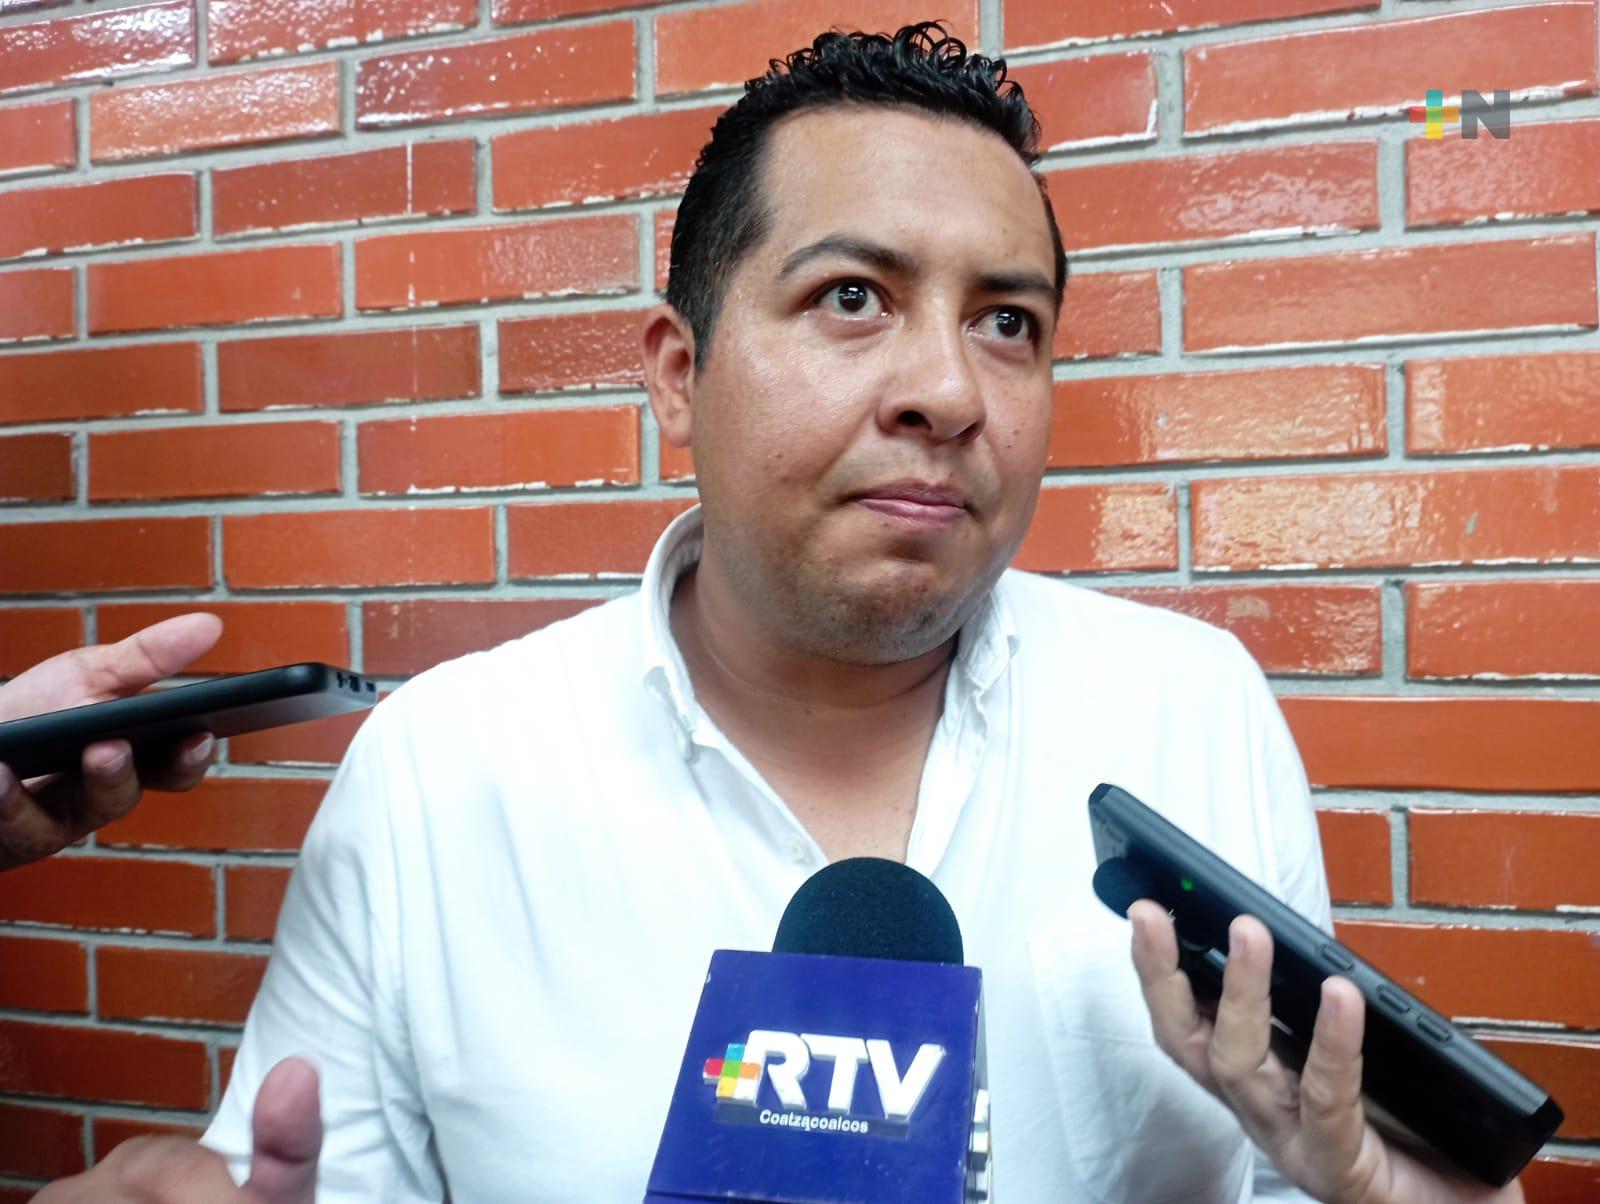 Sancionadas 10 empresas de sur de Veracruz por arrojar basura en lotes baldíos: Sedema